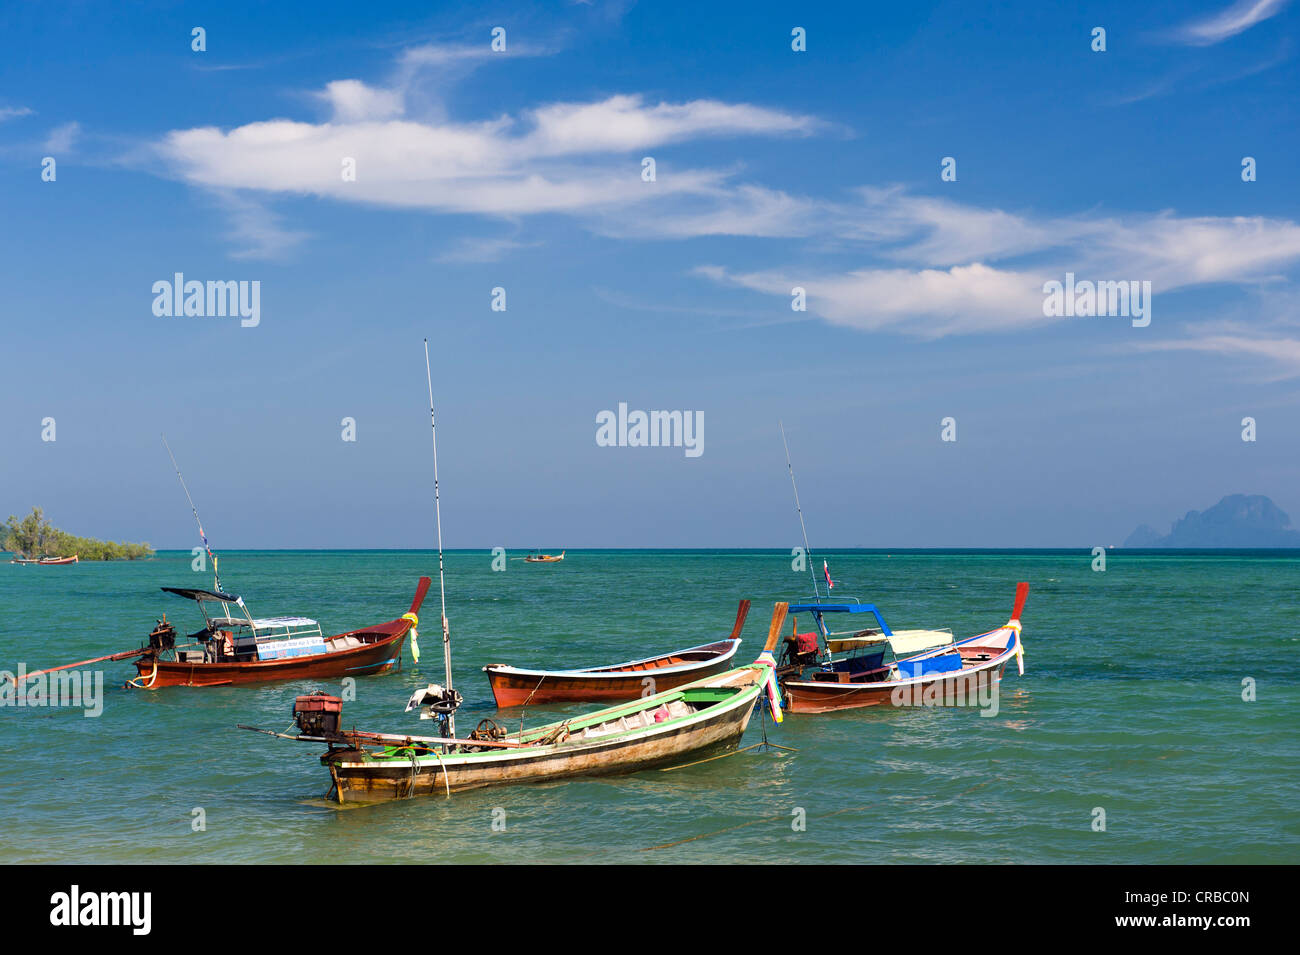 Bateaux à longue queue dans la mer, Ko Muk ou Ko Mook island, Thaïlande, Asie du Sud-Est Banque D'Images